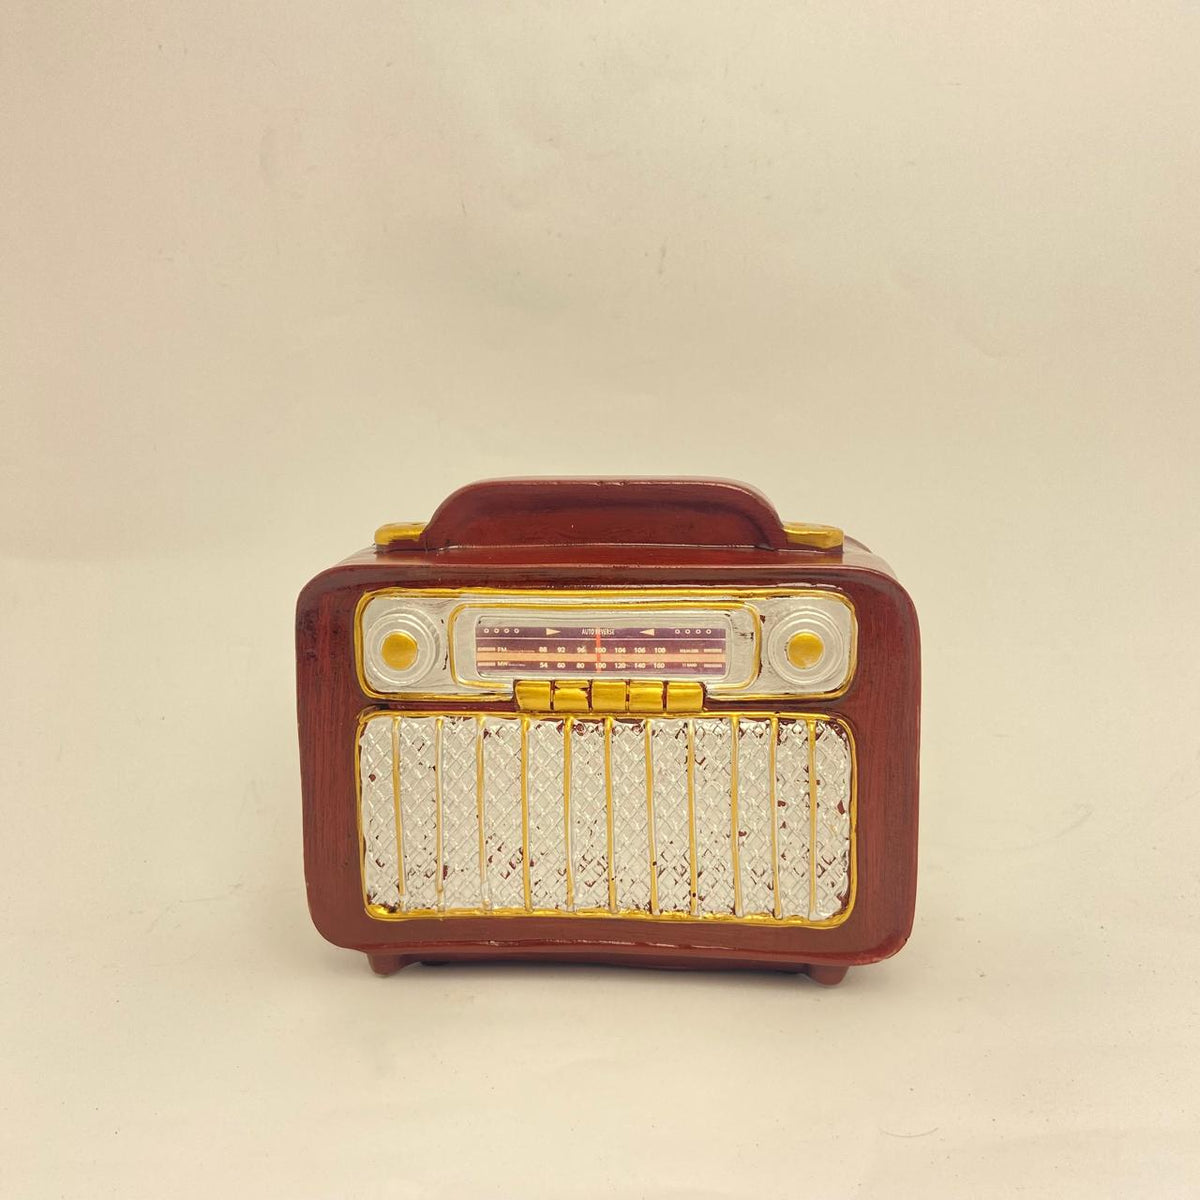 Vintage Radio Model | Coin Bank | Home Décor